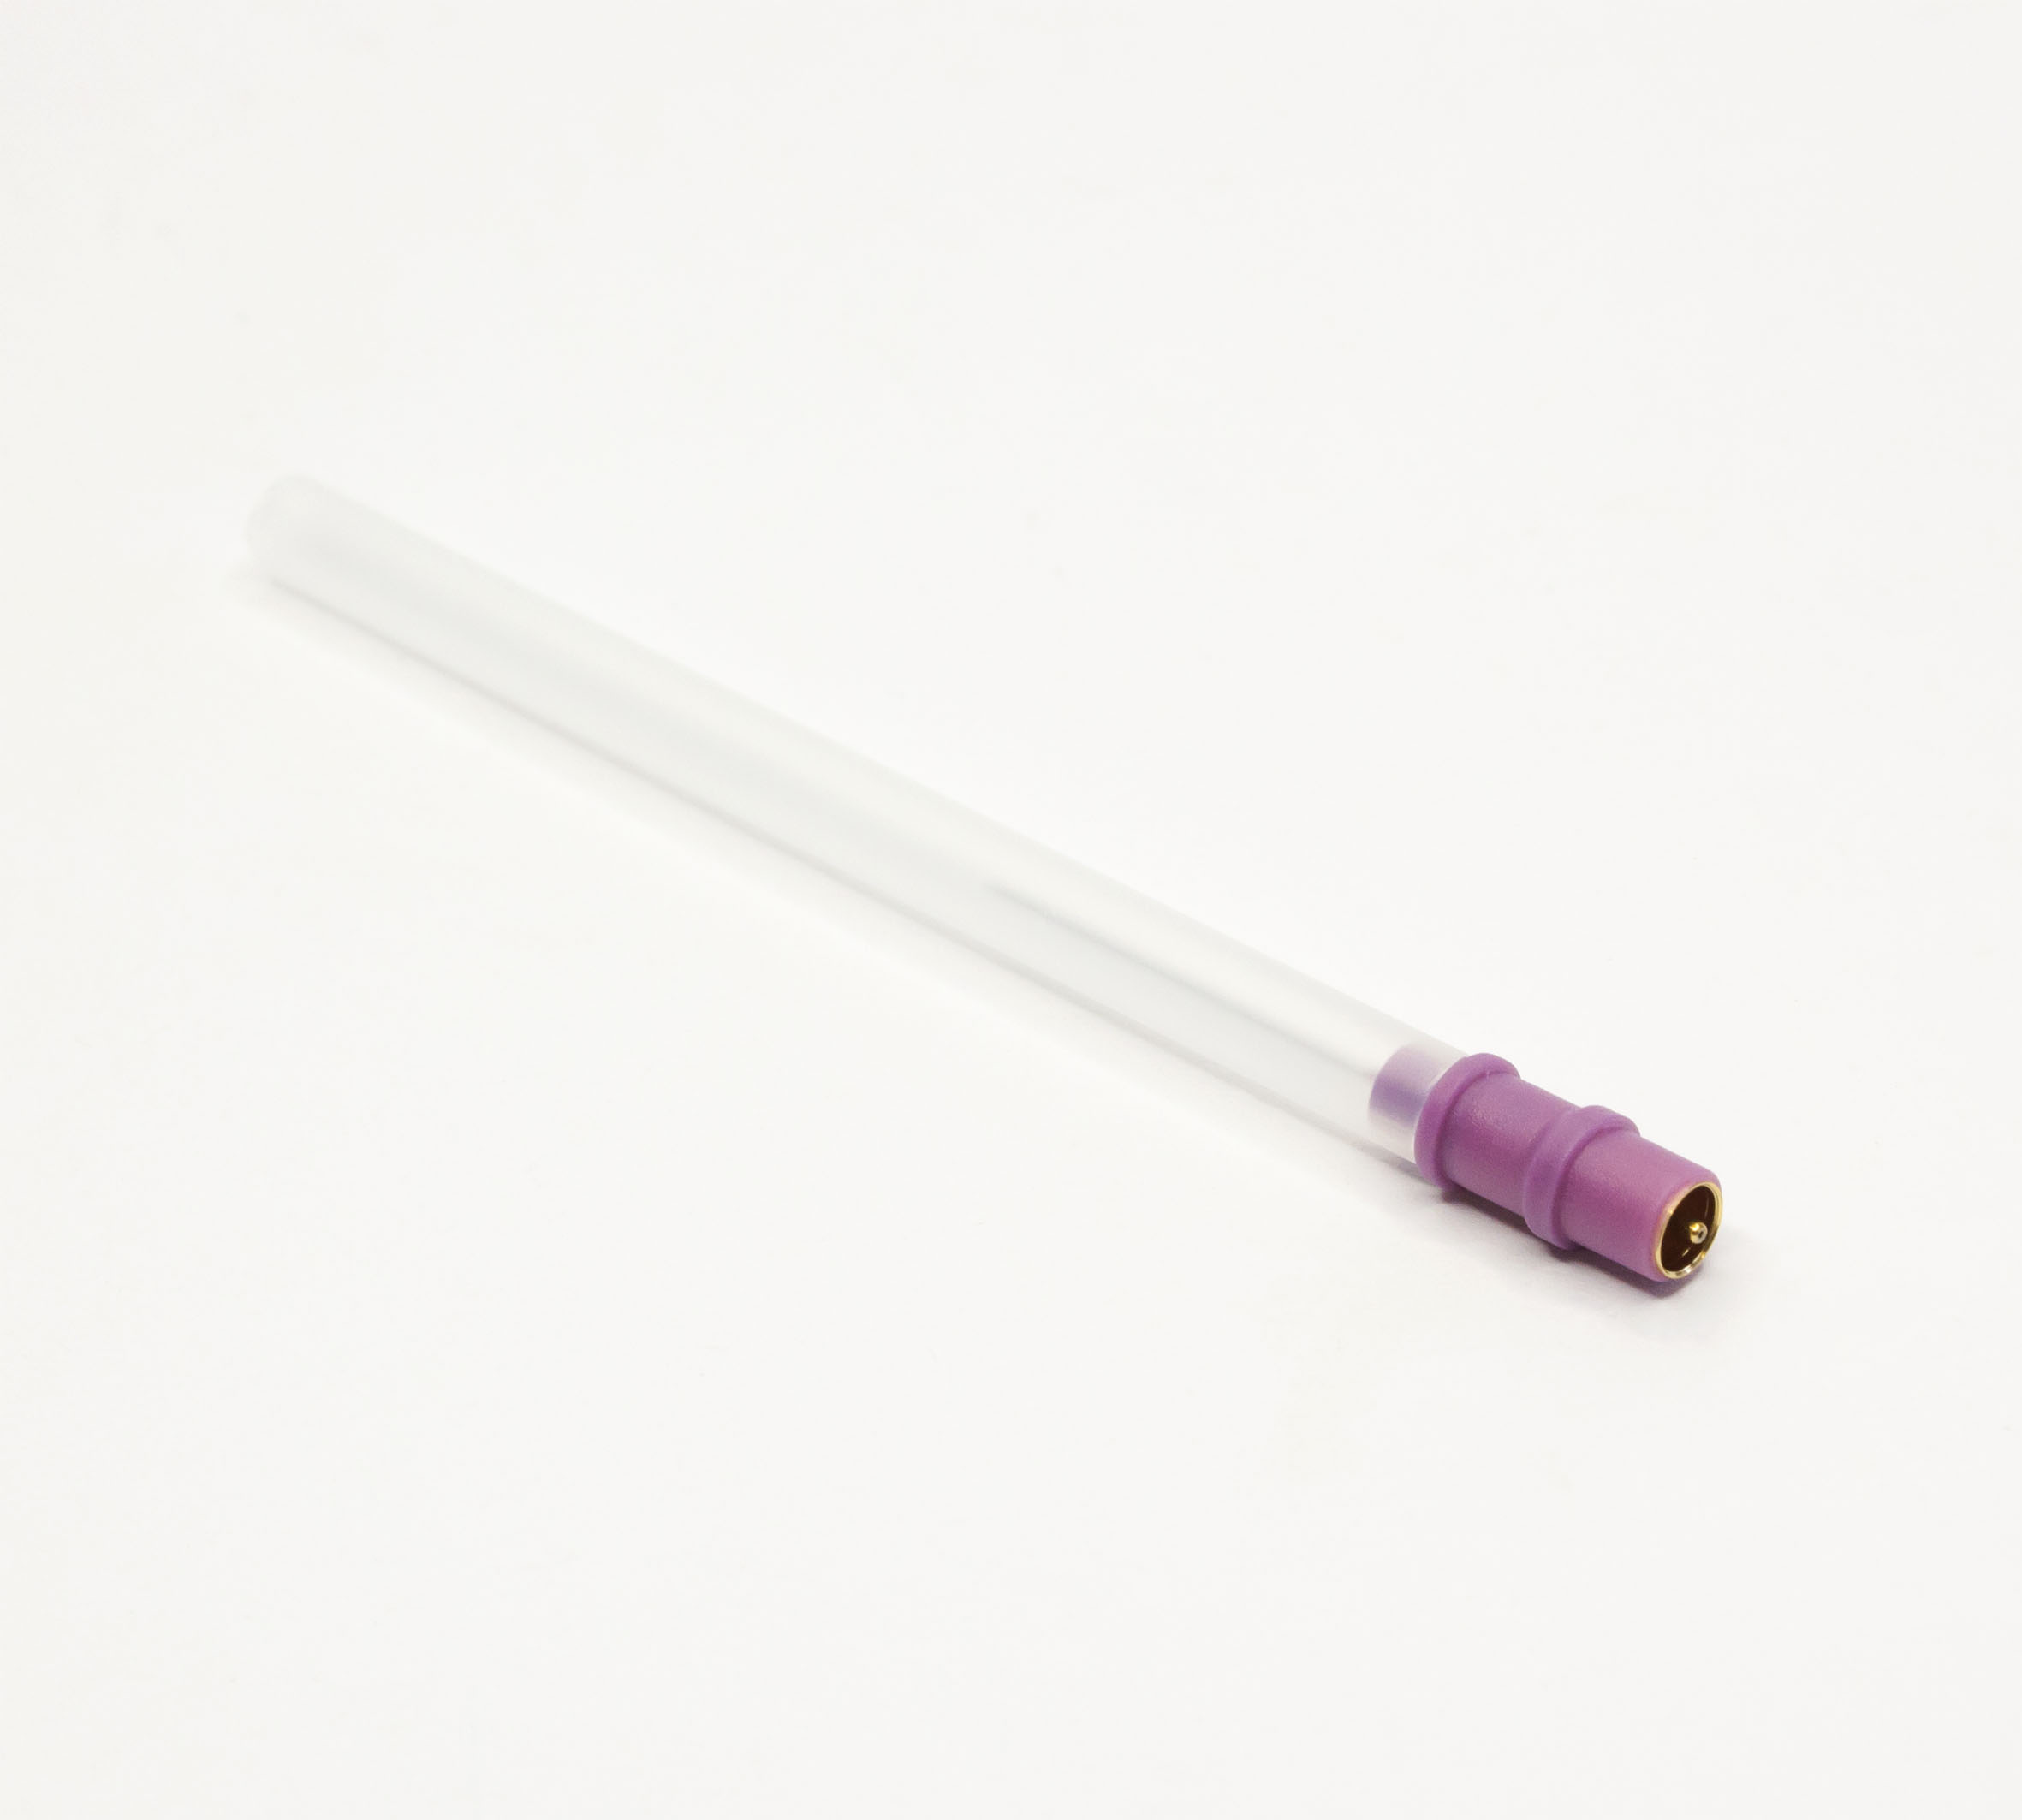 EMG-Einmal-Nadelelektrode "Myoline" - Violet (25er)